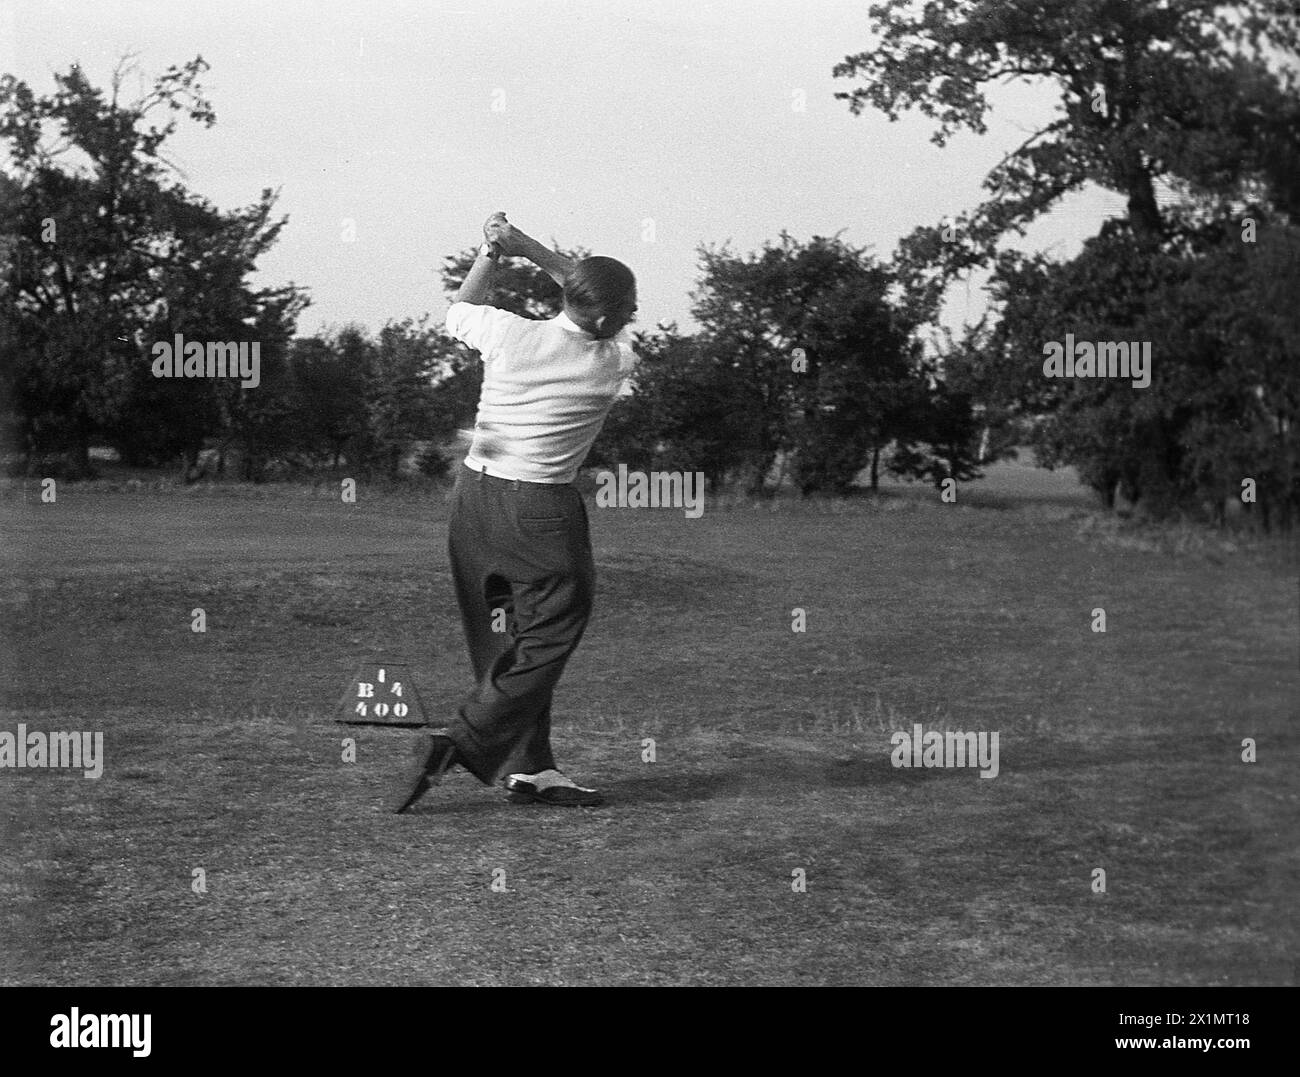 1950er Jahre, historisch, ein erwachsener männlicher Golfspieler, der auf einem Golfplatz im Landesinneren in England, Großbritannien, einen Ball vom Abschlag schlägt. Stockfoto